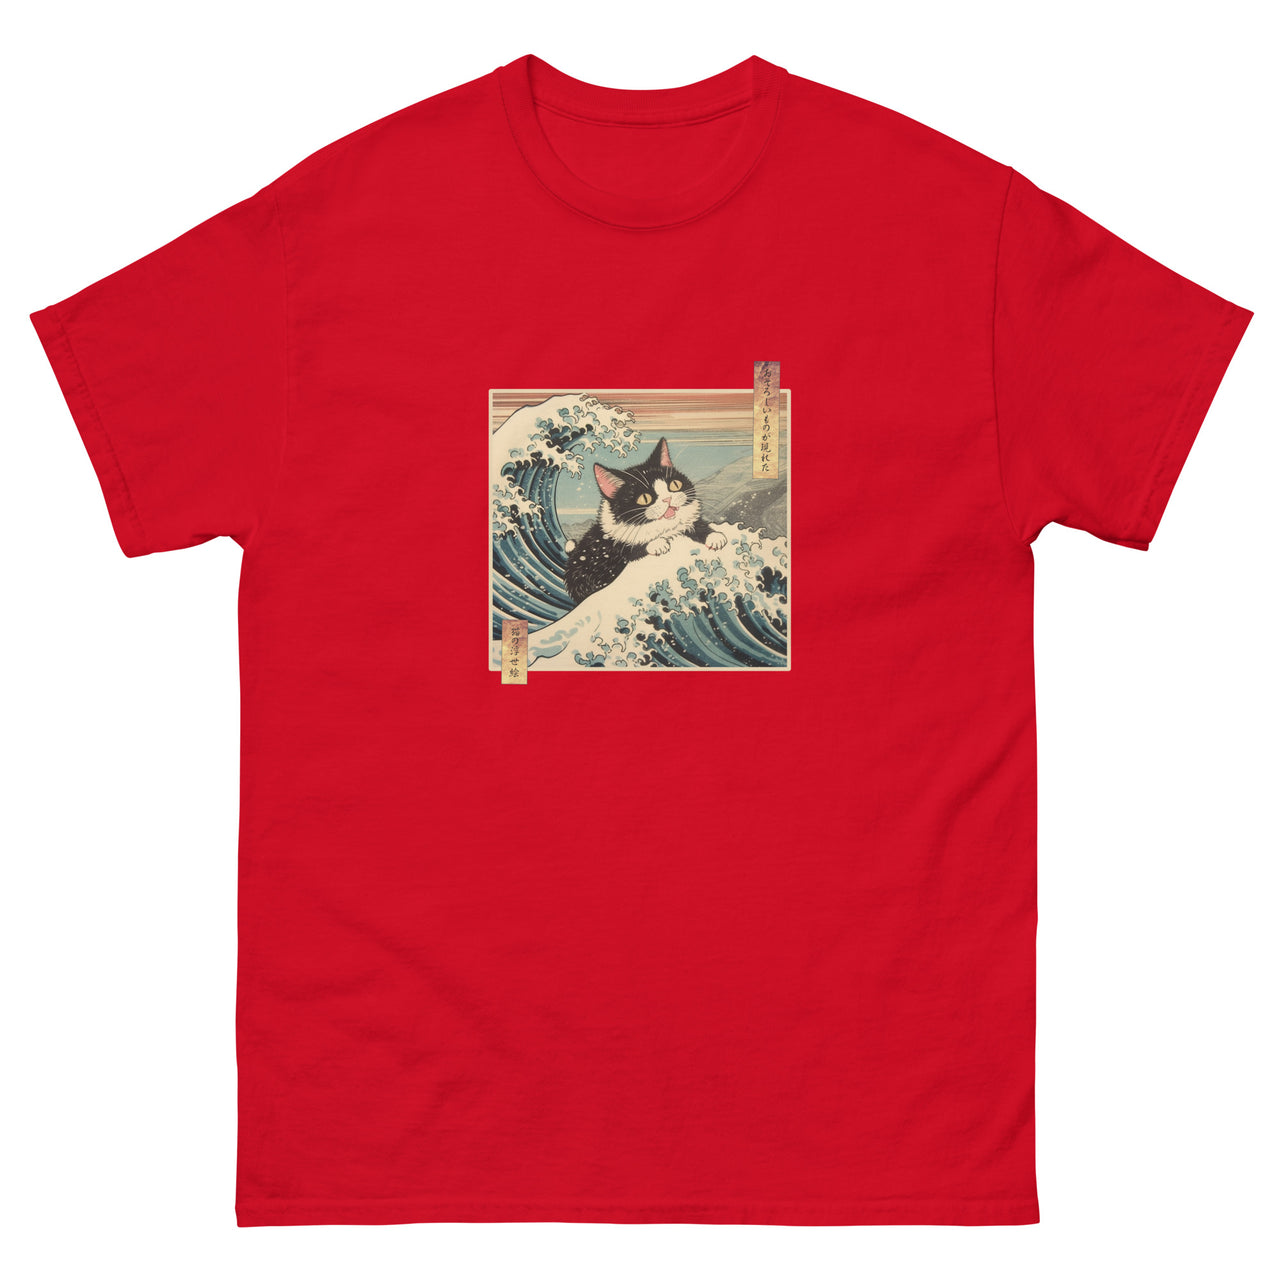 A Fearsome Cat Ukiyo-e Great Wave T-Shirt